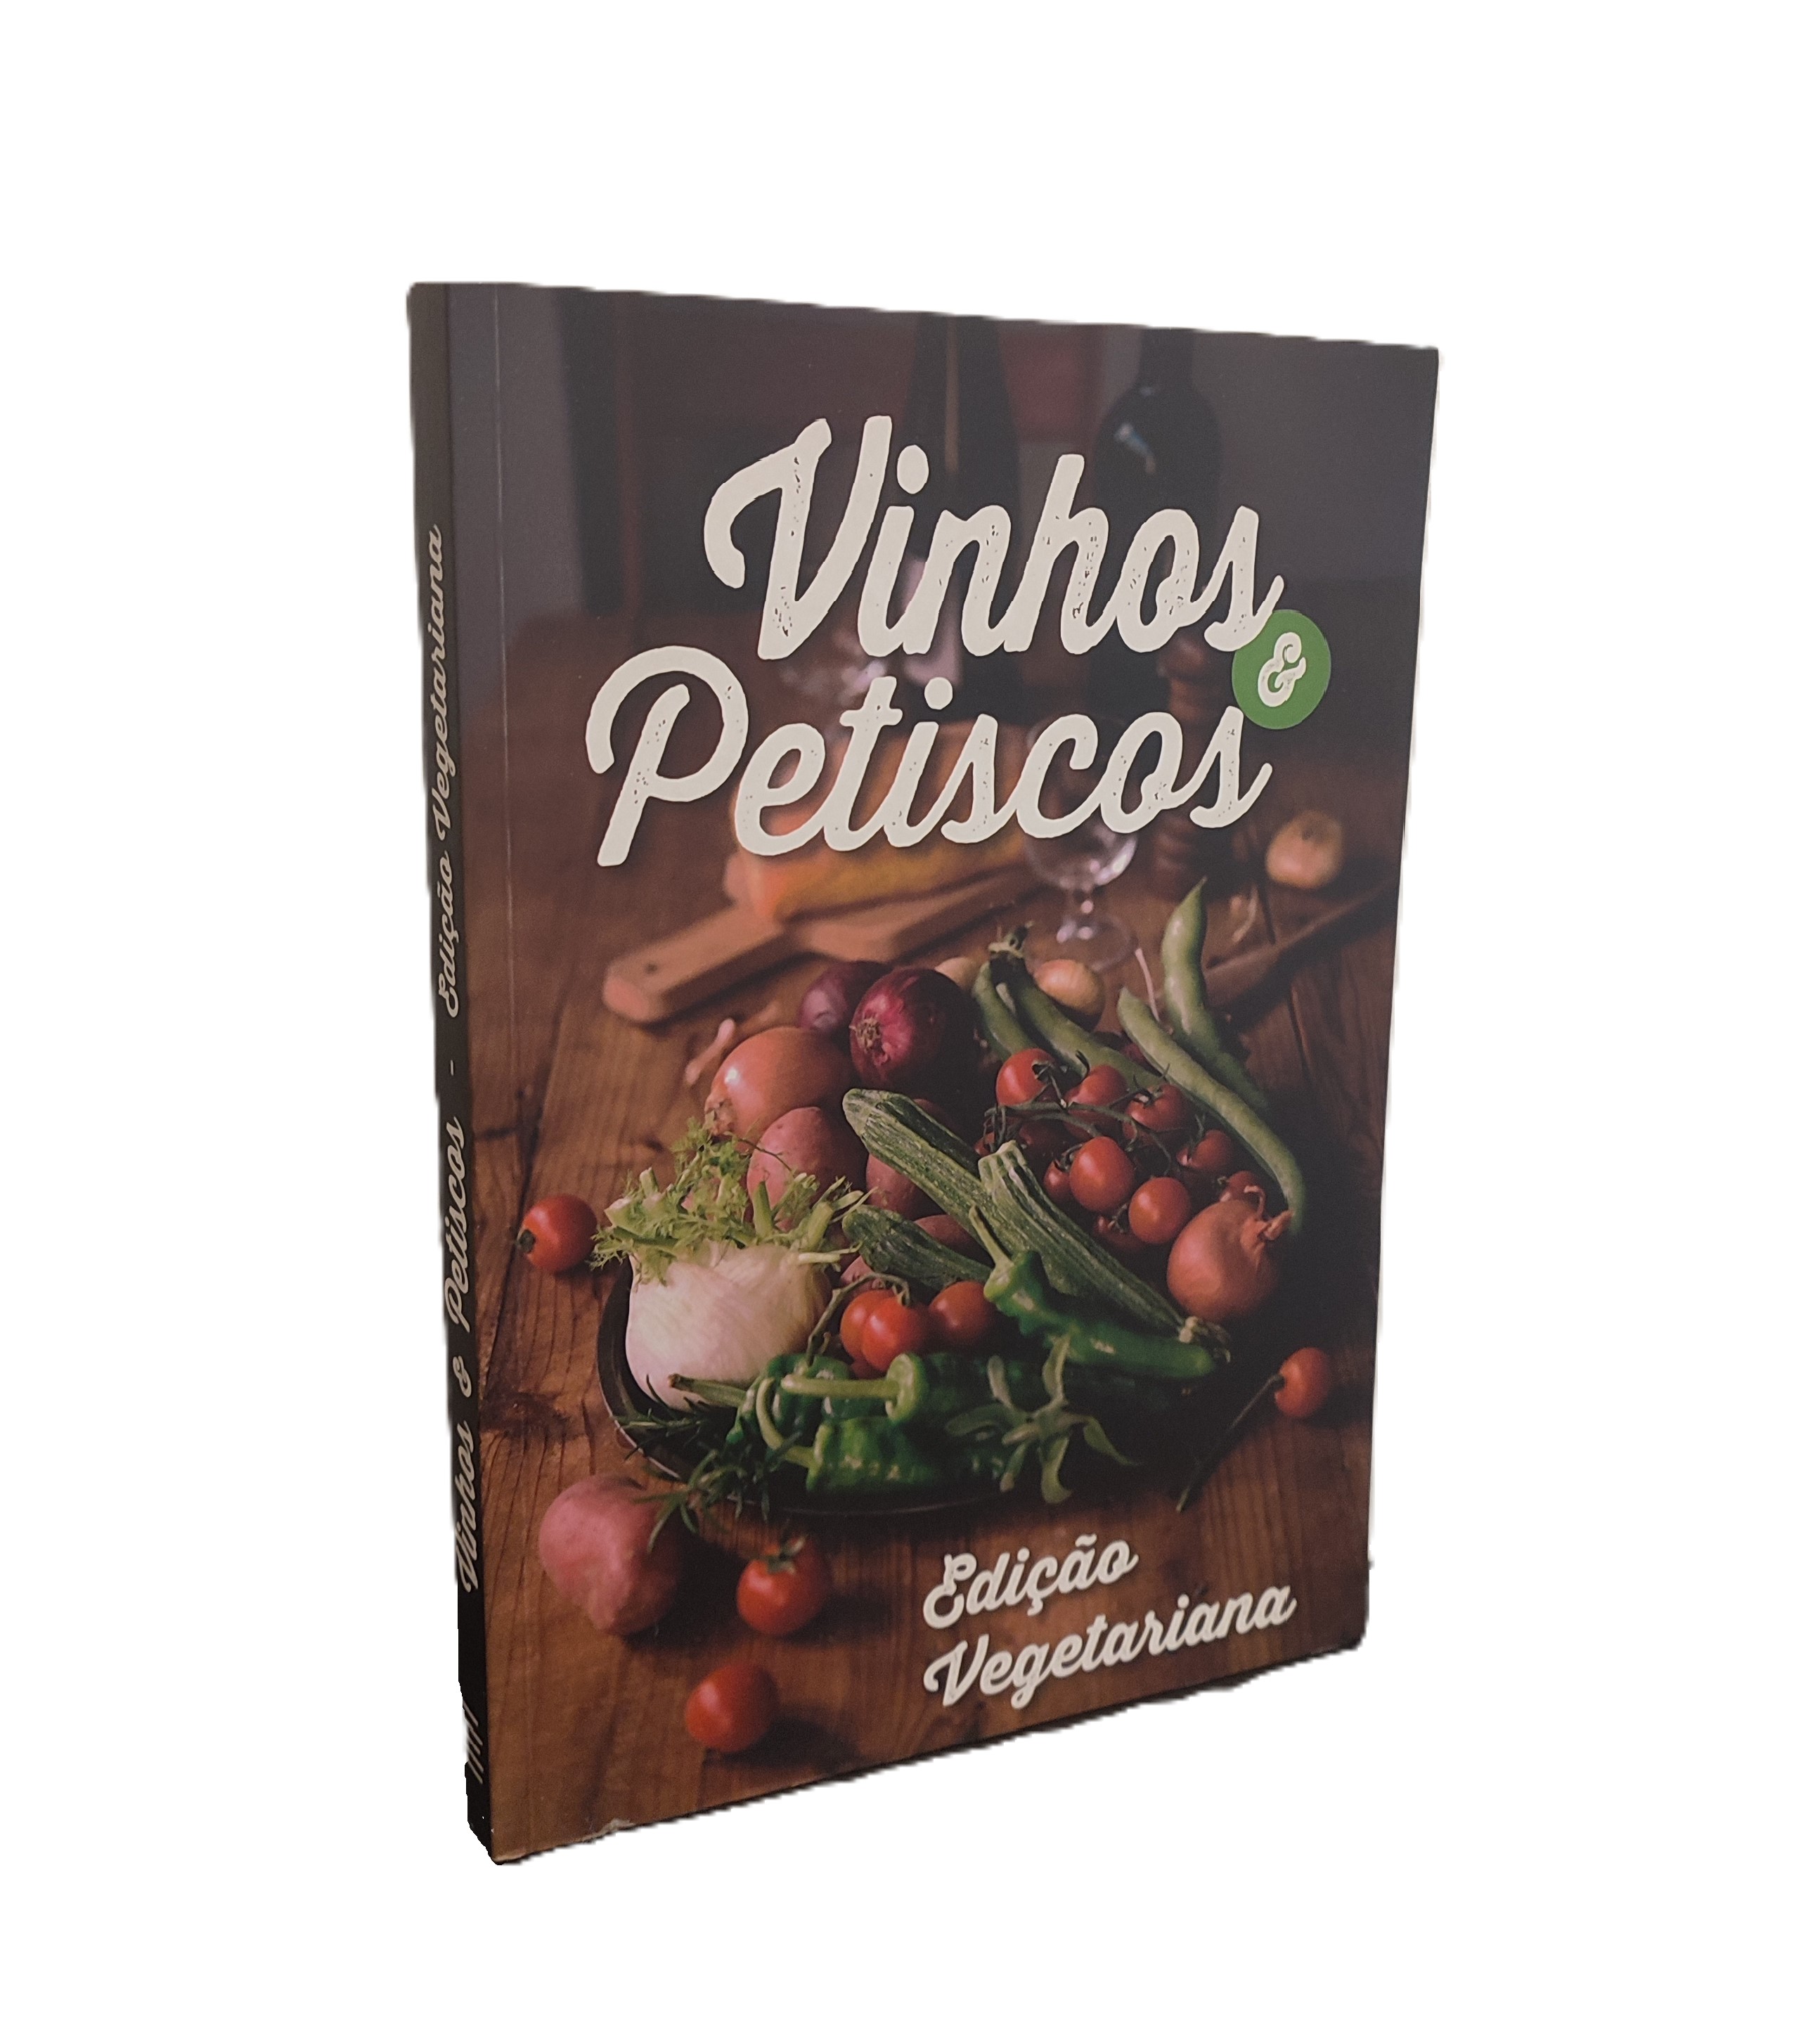 Vinhos e petiscos - Edição vegetariana 0